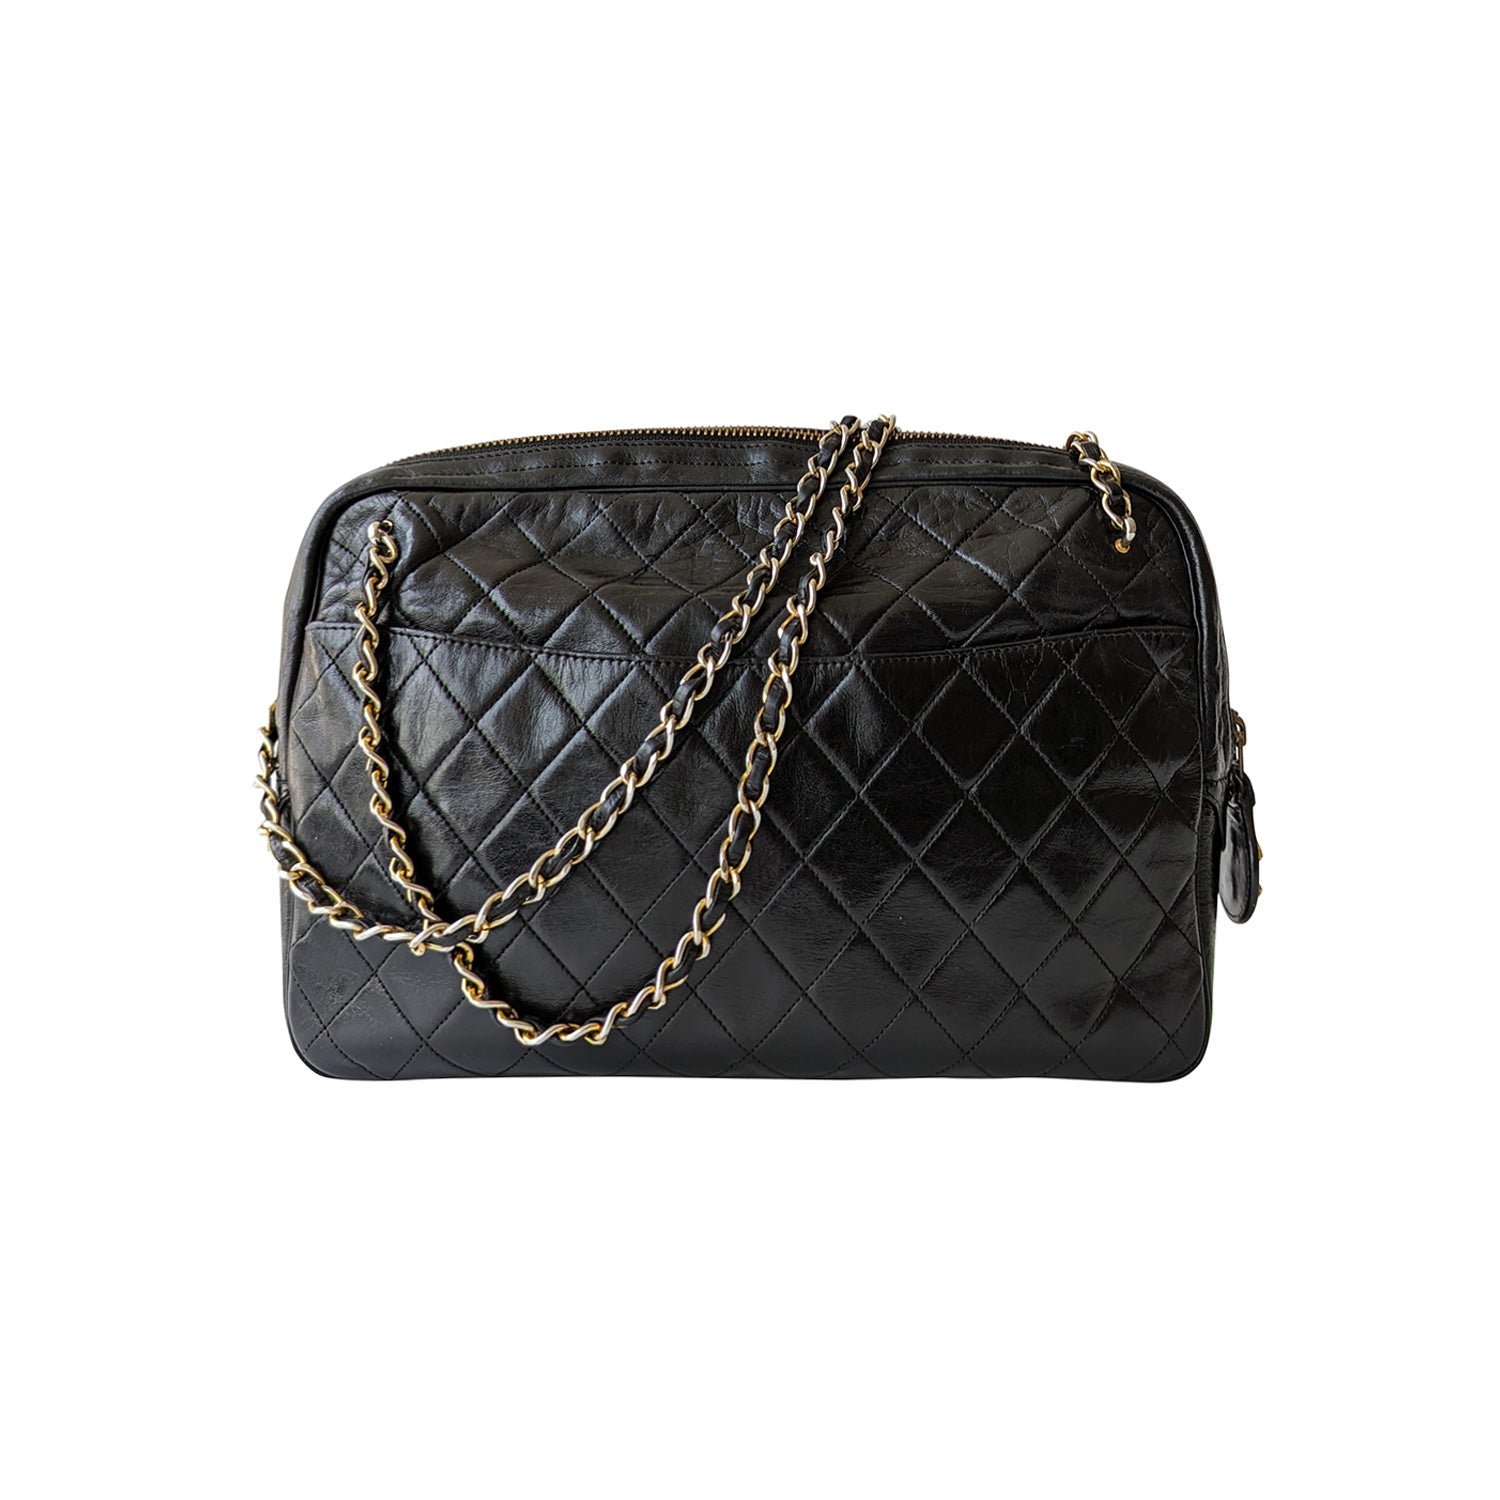 Shop authentic Chanel Quilted Vintage Shoulder Bag at revogue for